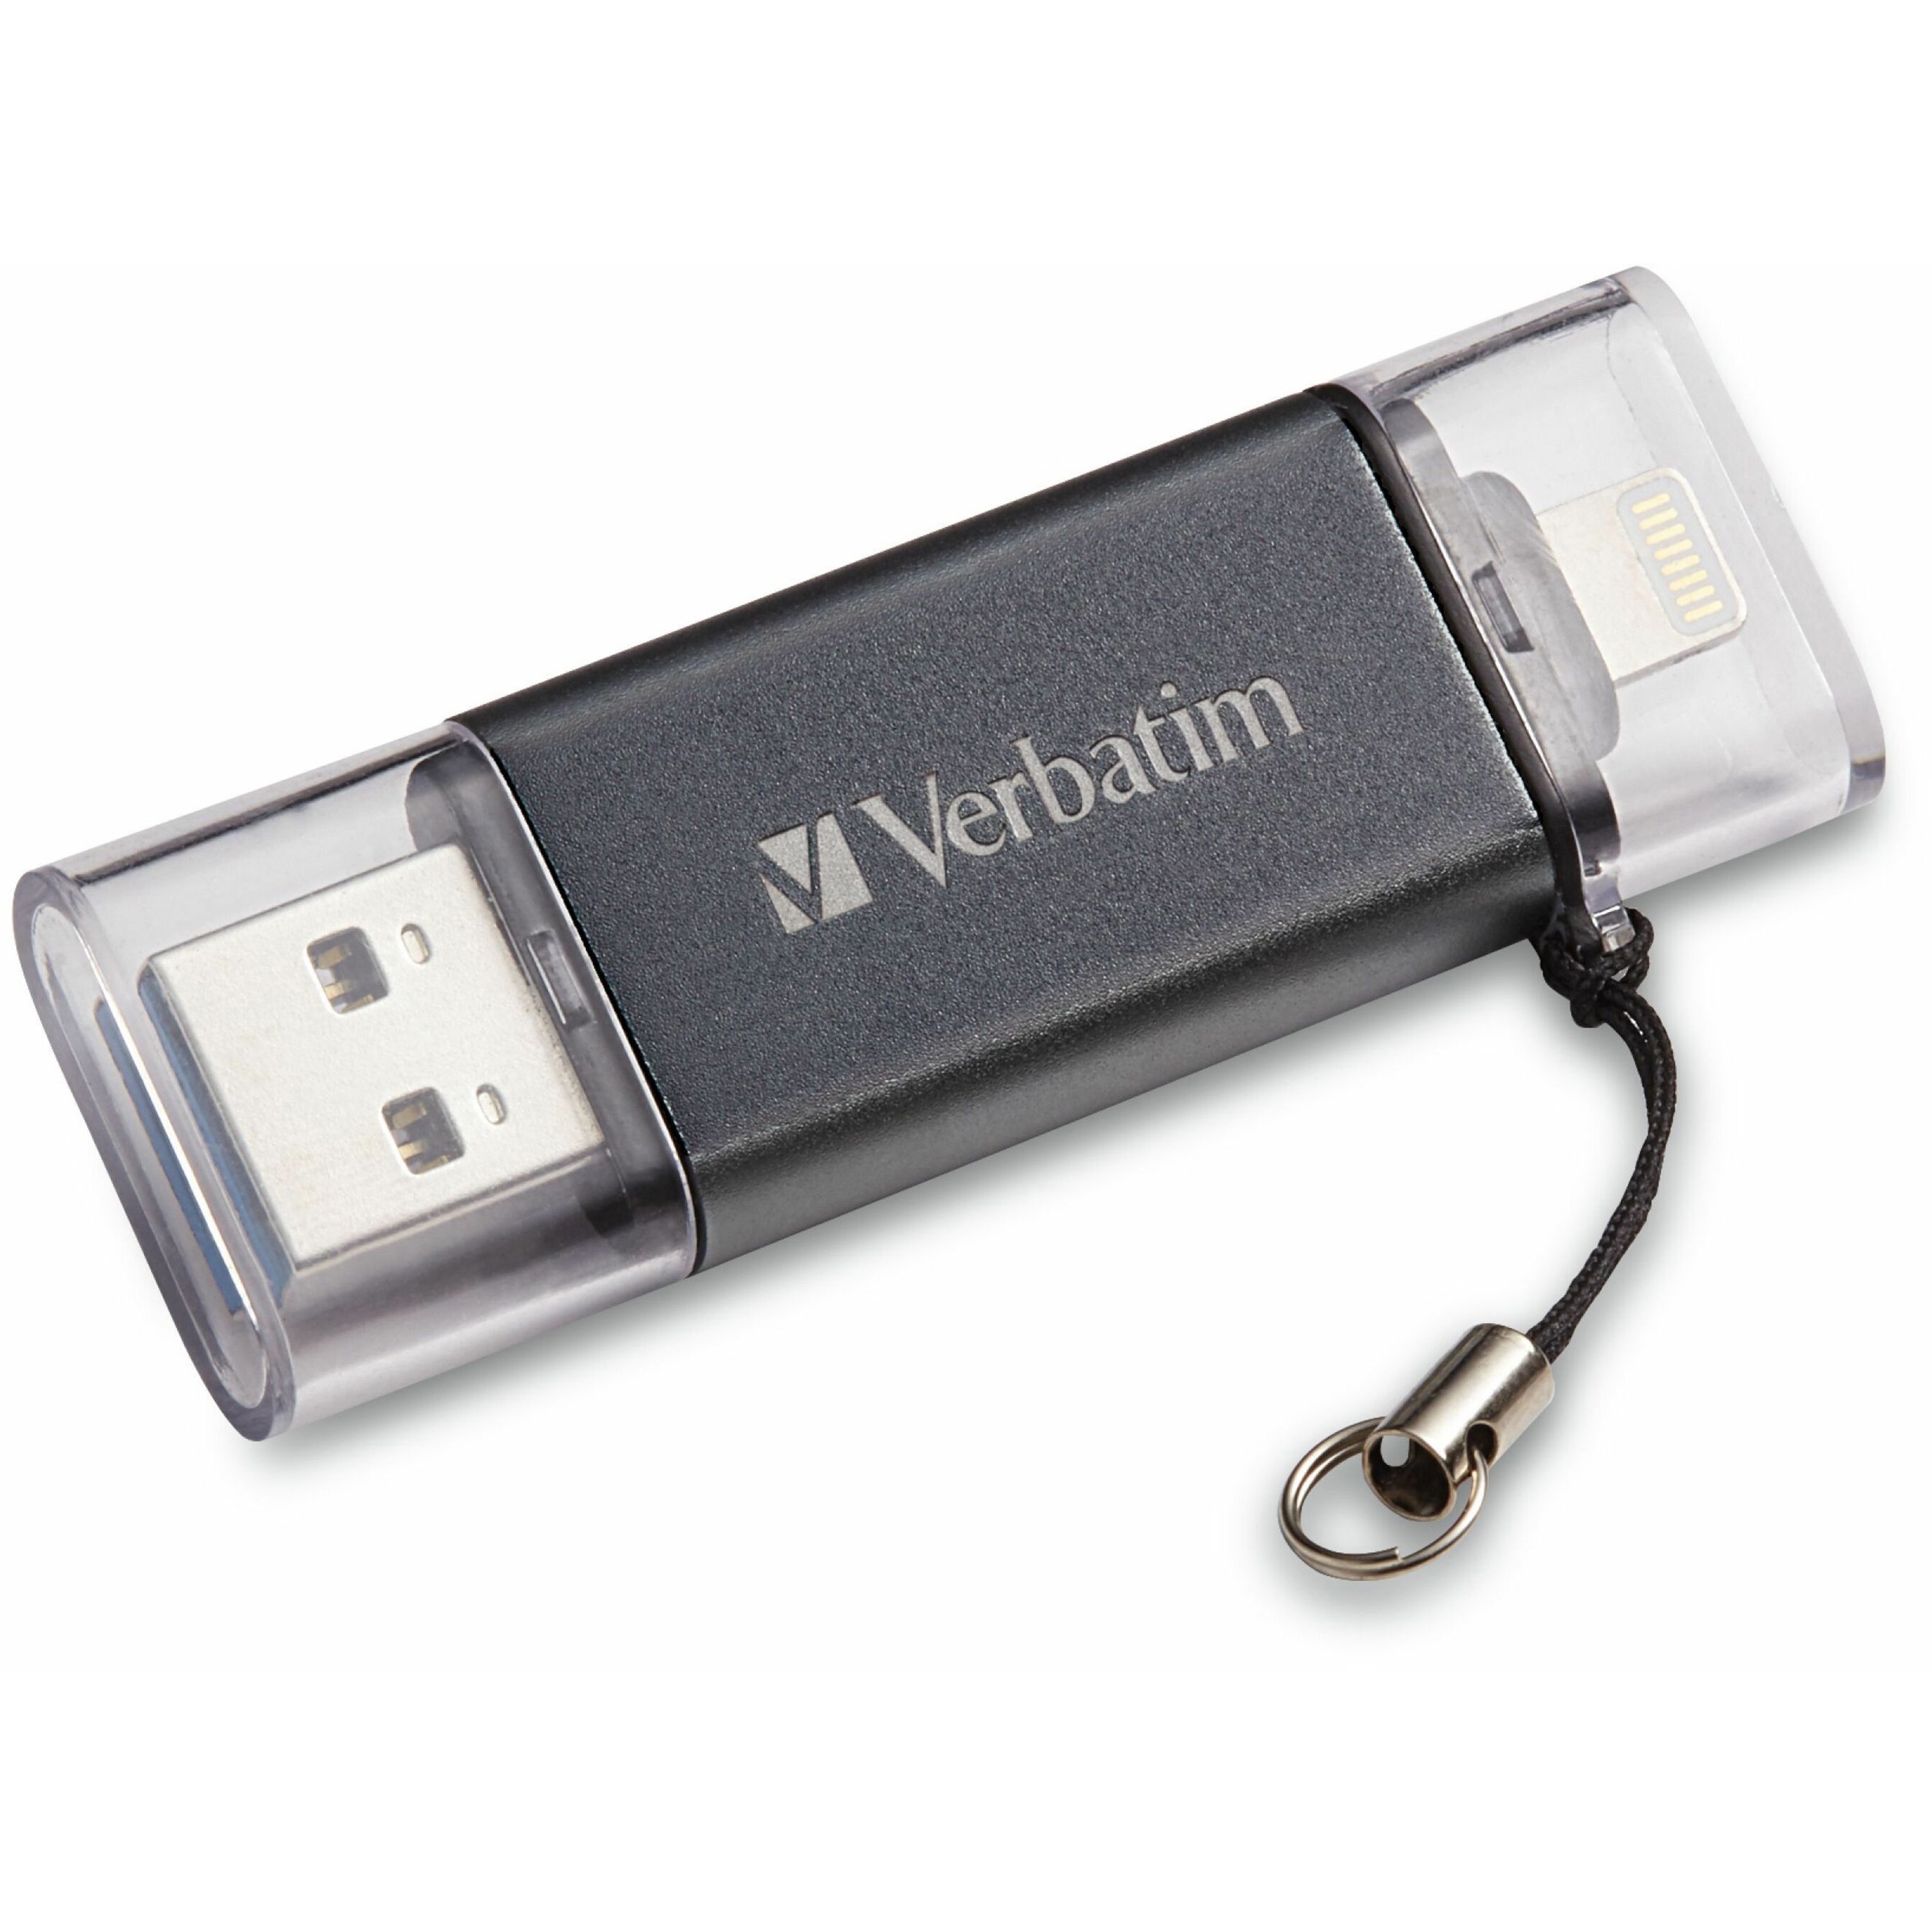 Tak for din hjælp Outlook Grundlægger Verbatim 16GB Store 'n' Go Dual Flash Drive - 16 GB - USB 3.2 (Gen 1) Type  A, Lightning - Graphite - Lifetime Warranty - 1 Each - Filo CleanTech